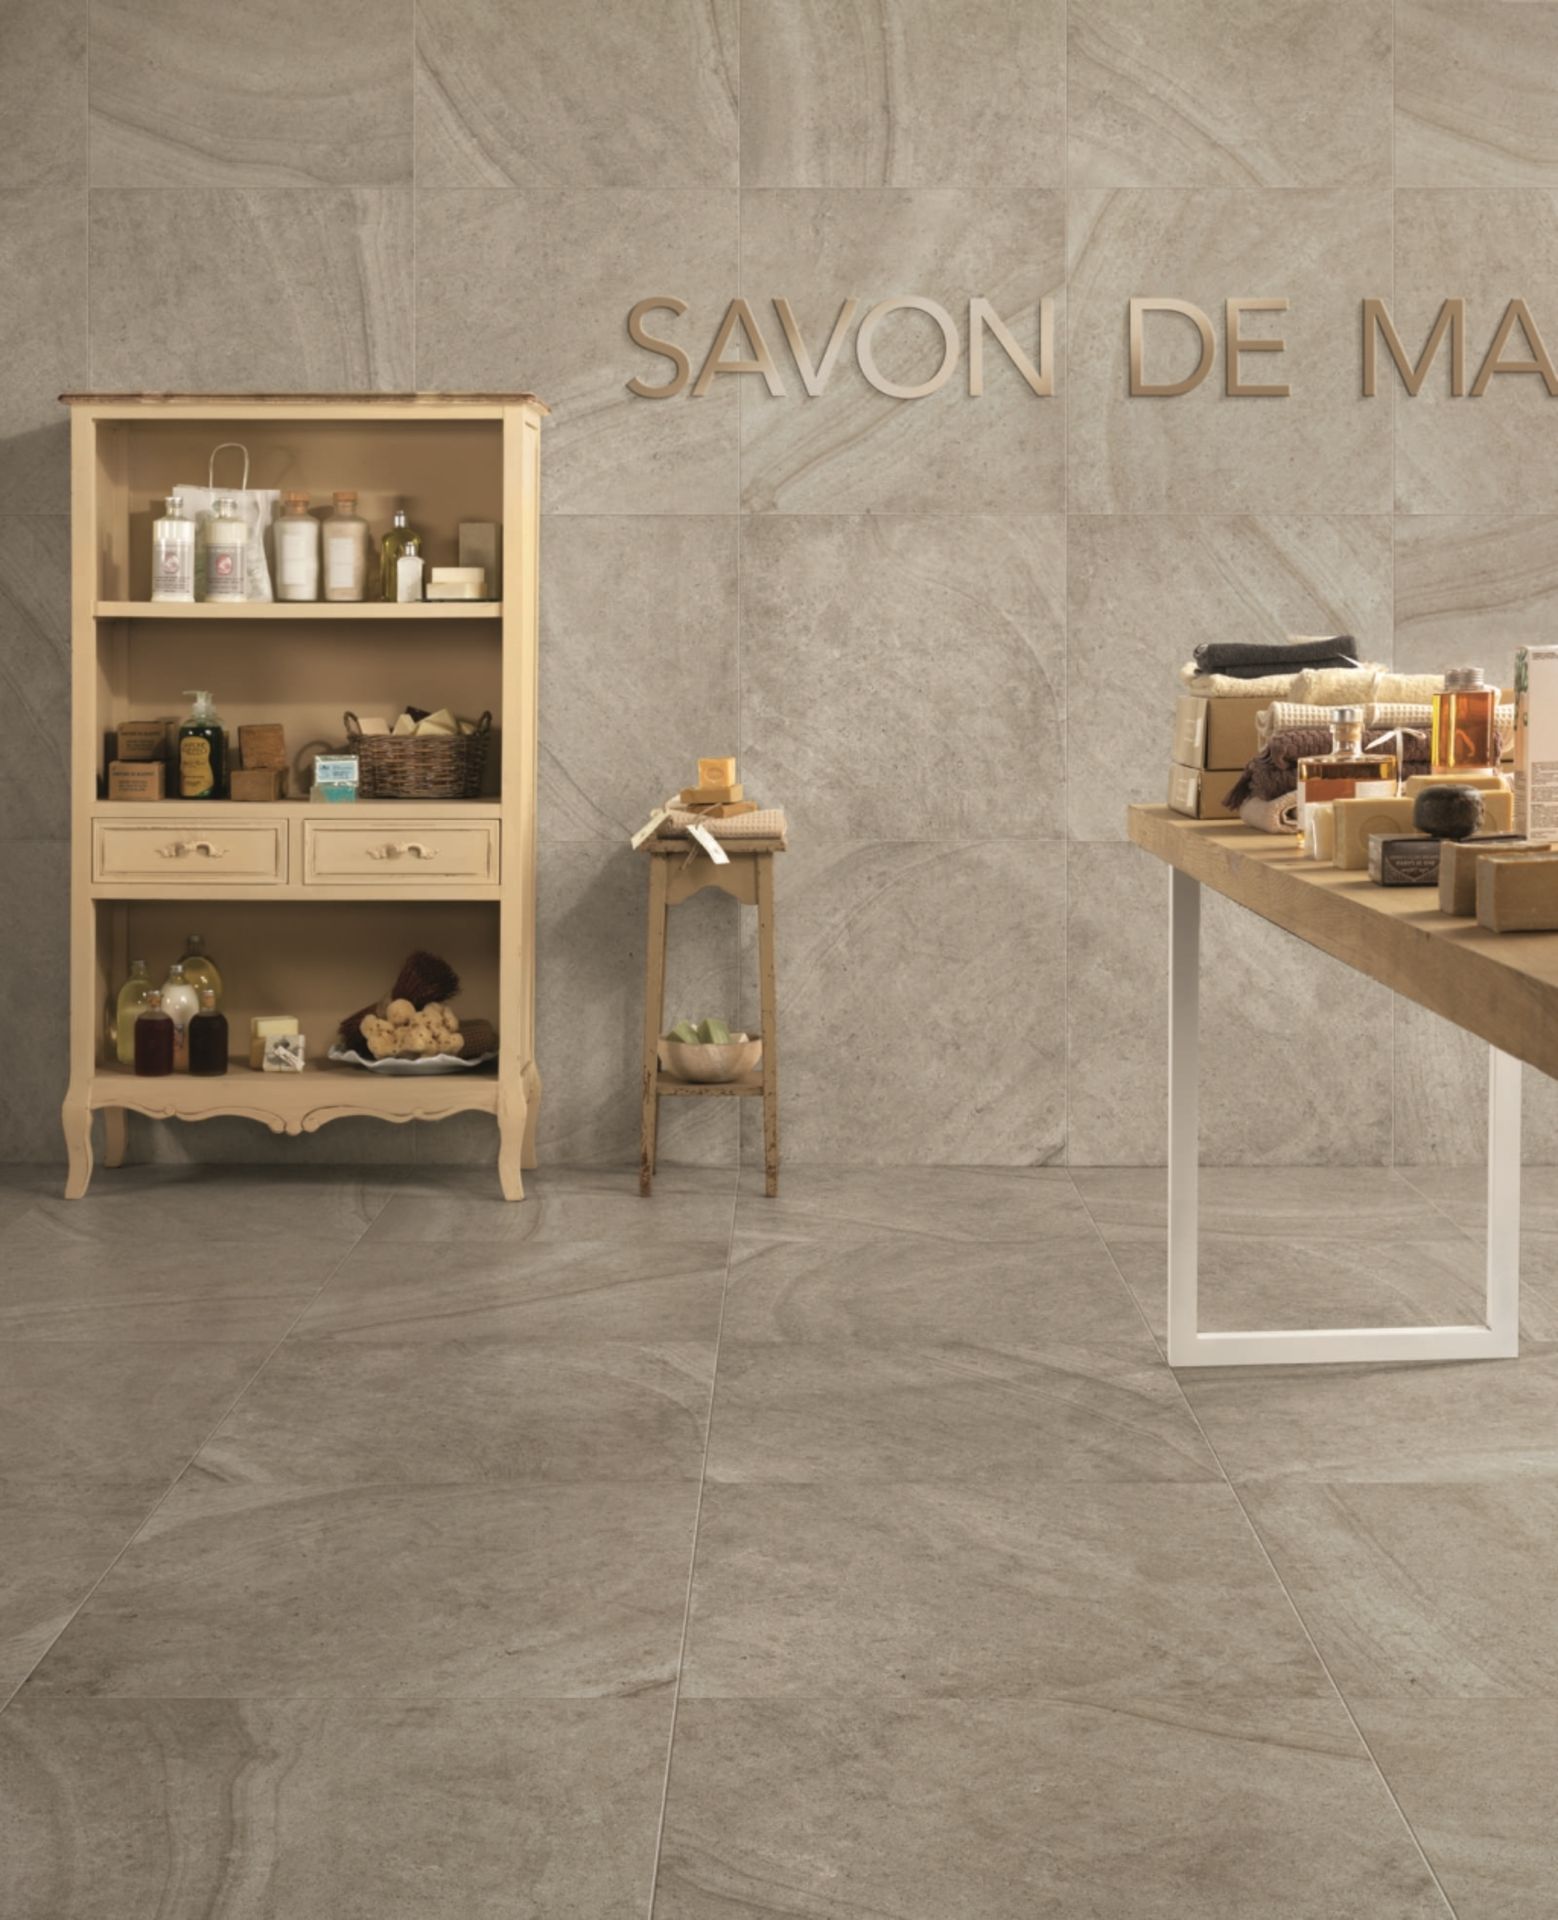 Maison Perle 8.5MM 60X30CM High Quality Italian Porcelain tiles 2 pallets - Image 3 of 3